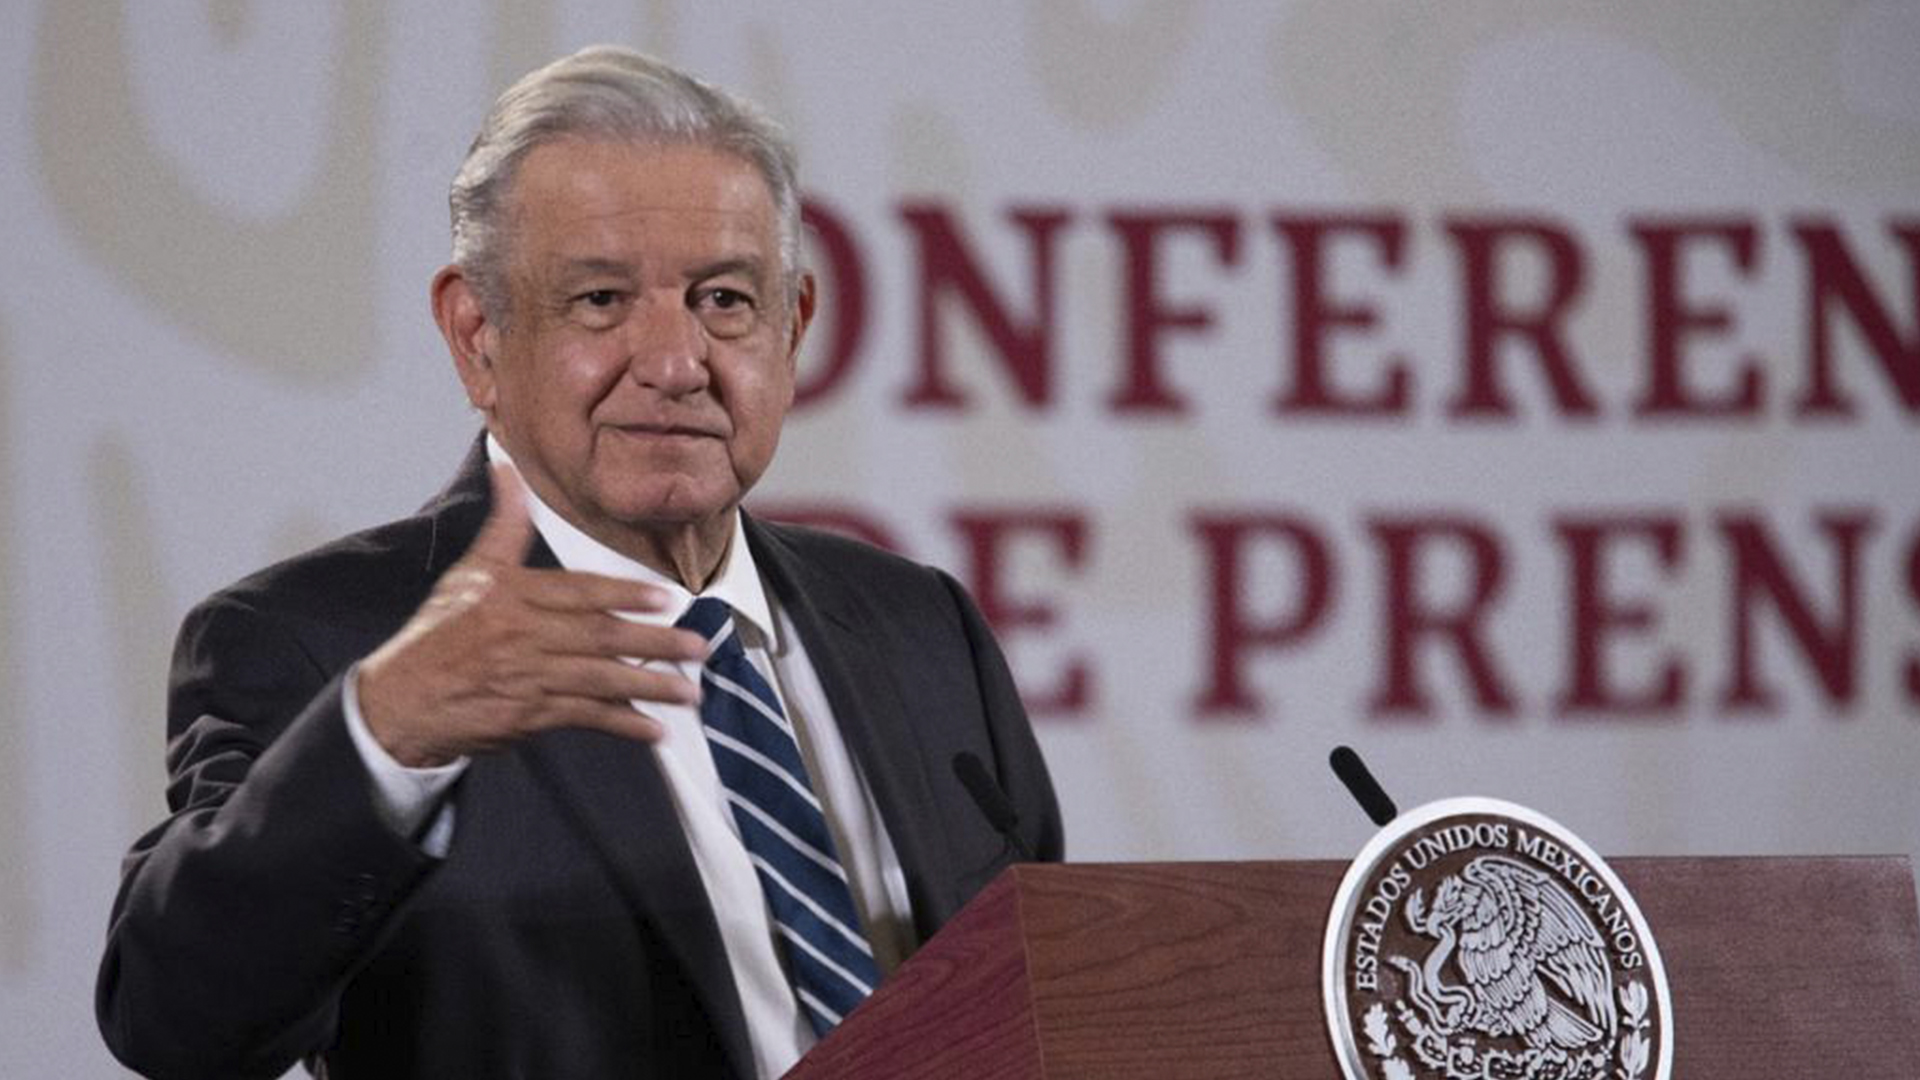 El presidente acusa intereses políticos detrás de las protestas (Foto: Presidencia de México)